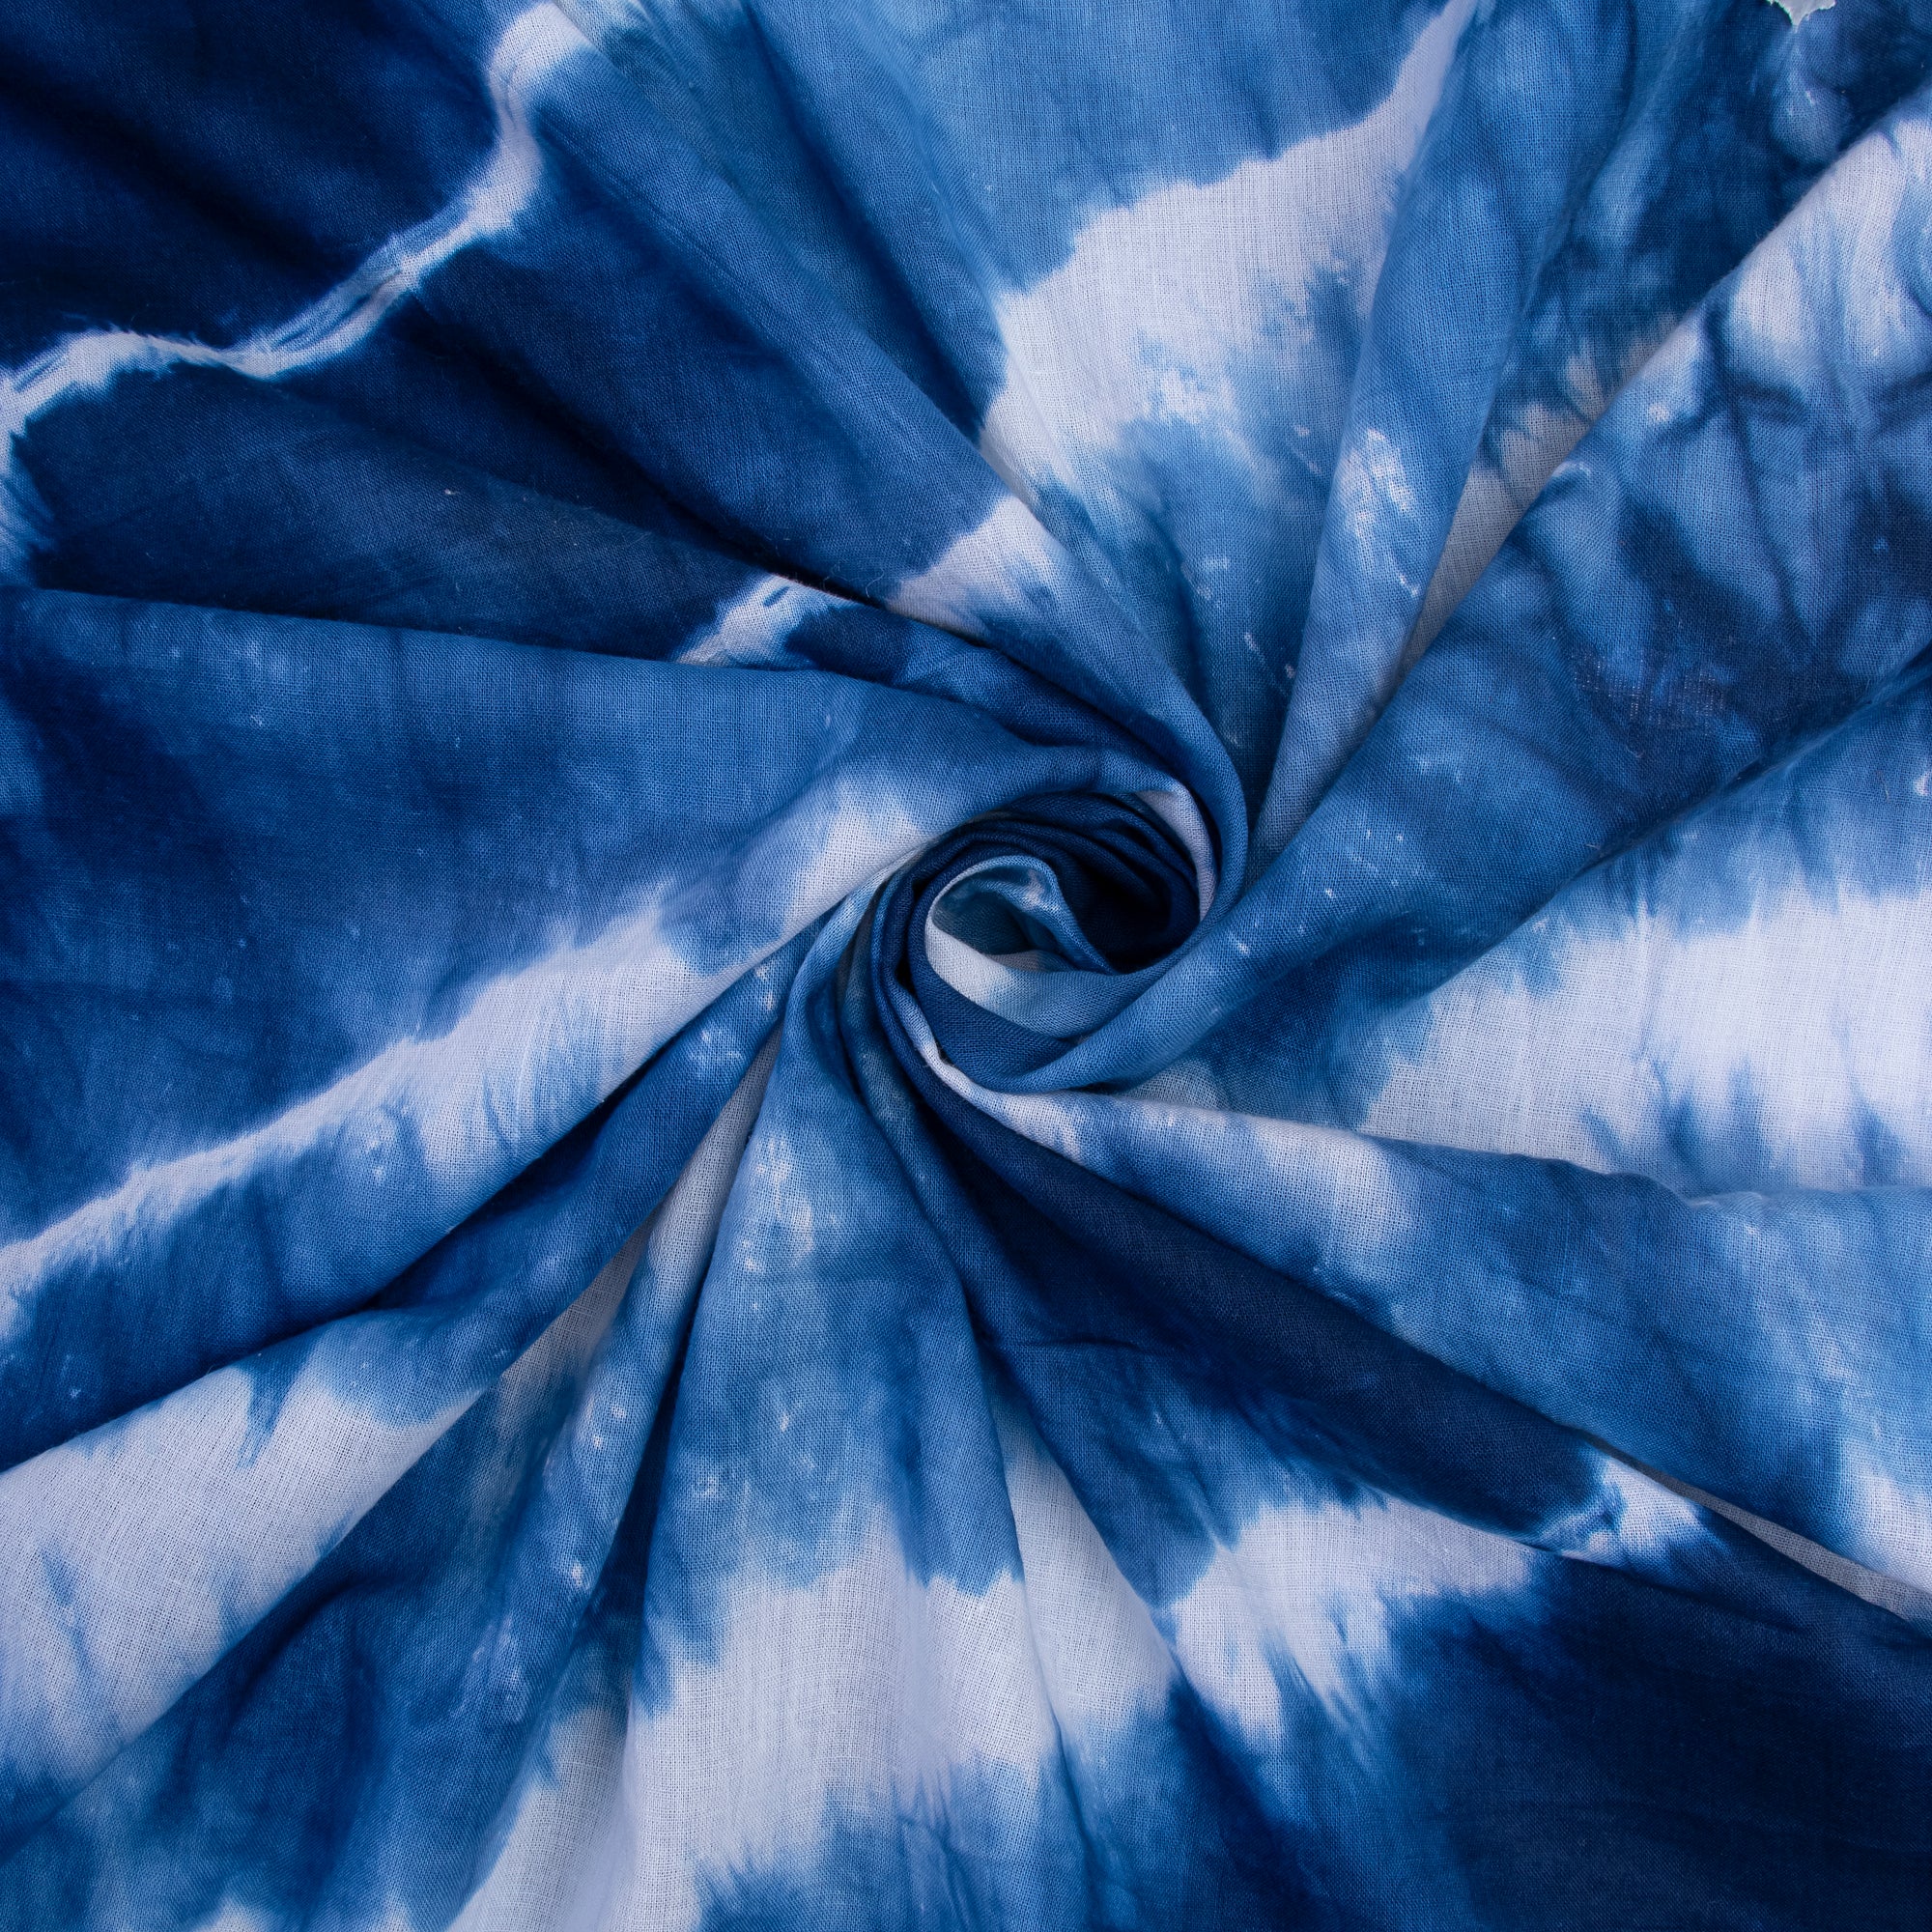 Blue Wave Print Shibori Tie Dye Fabric